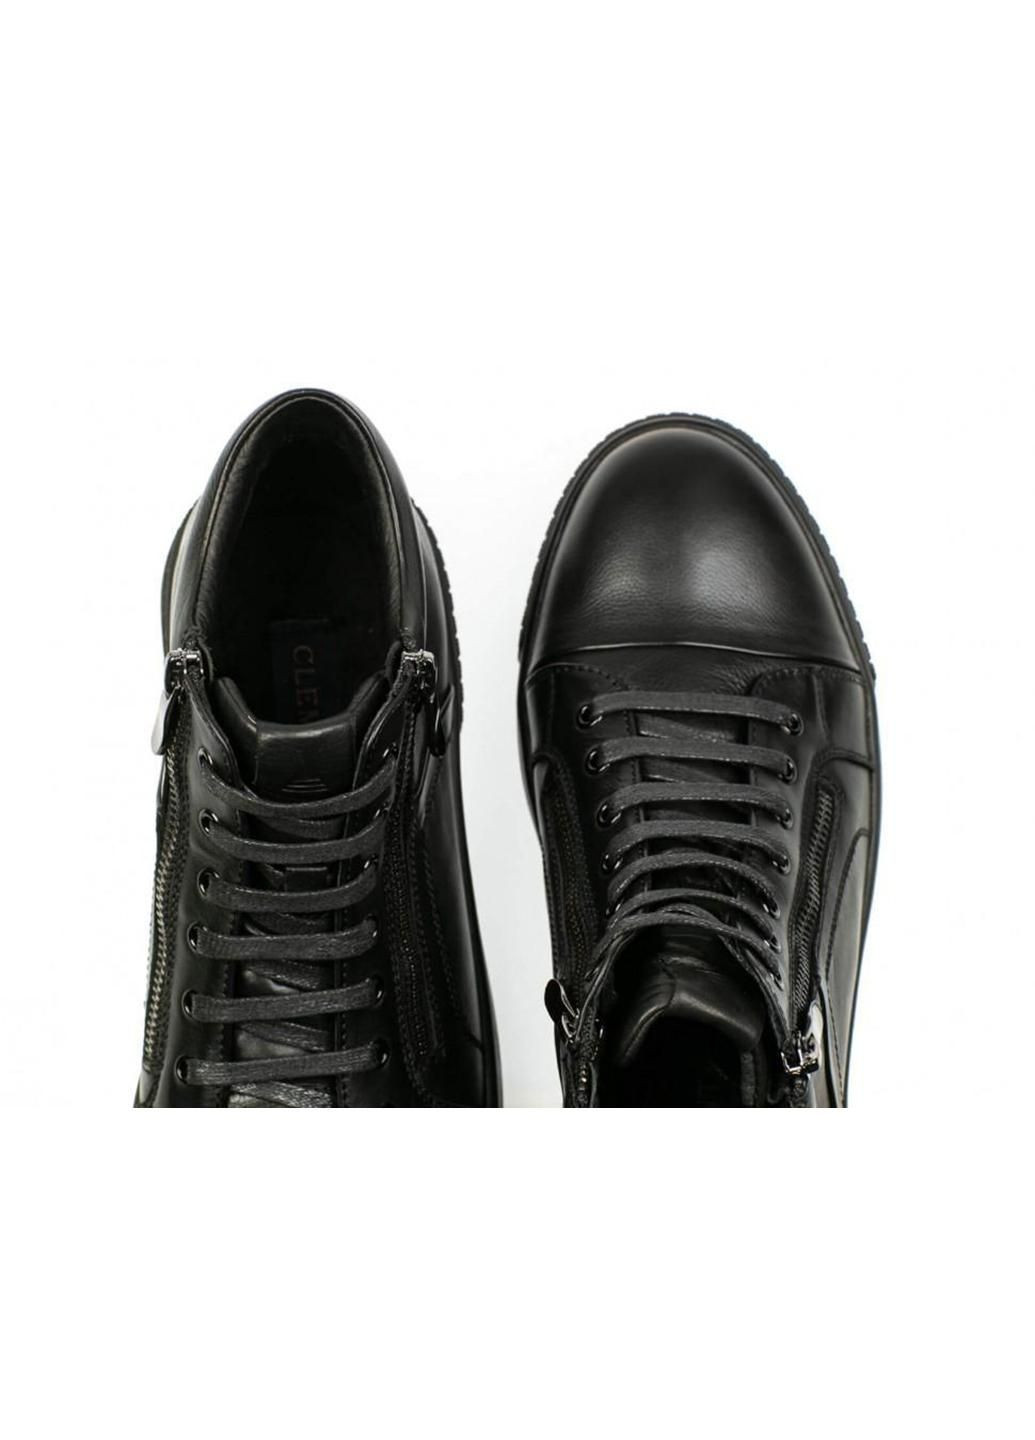 Черные зимние ботинки 7184309-б цвет черный Clemento